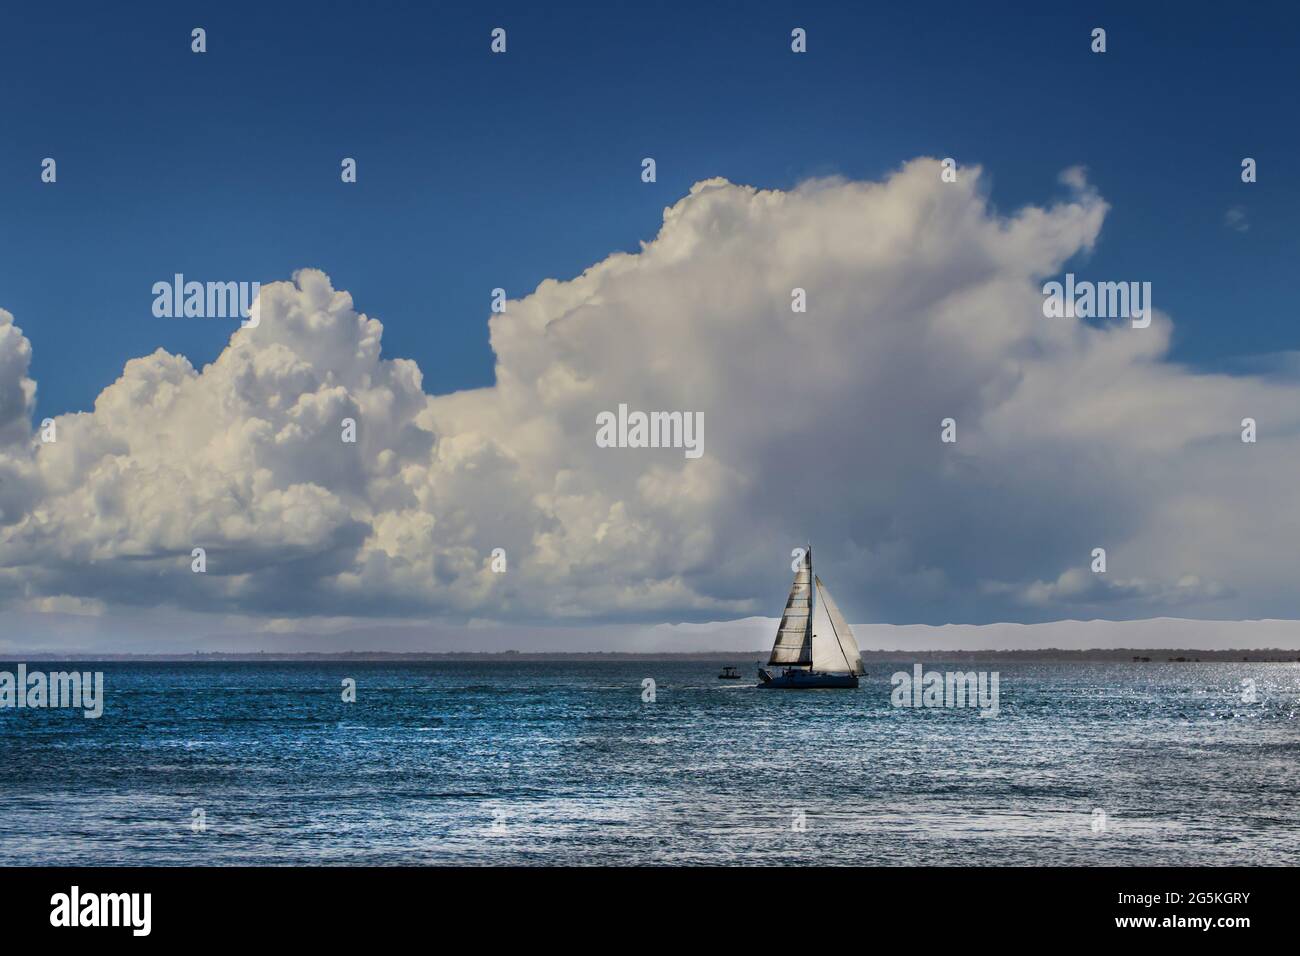 Segelboot auf dem Wasser mit weit weg von der Küste sichtbar und riesige Wolke in blauem Himmel Stockfoto